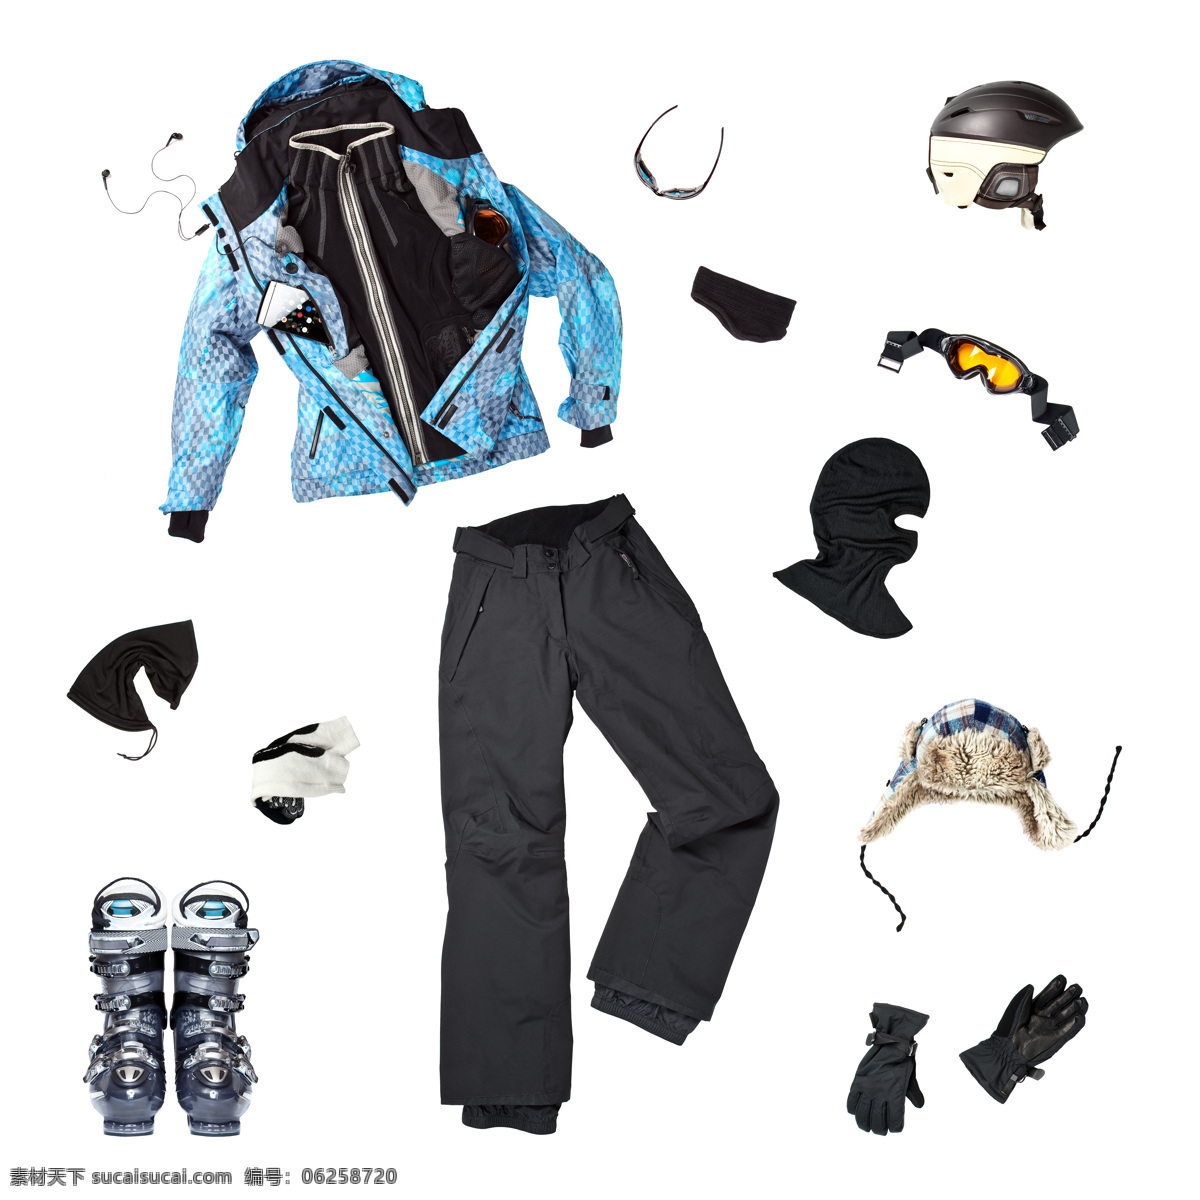 滑雪 服饰 工具 滑雪服 衣服 设备 鞋 帽子 手套 眼镜 头盔 滑雪图片 生活百科